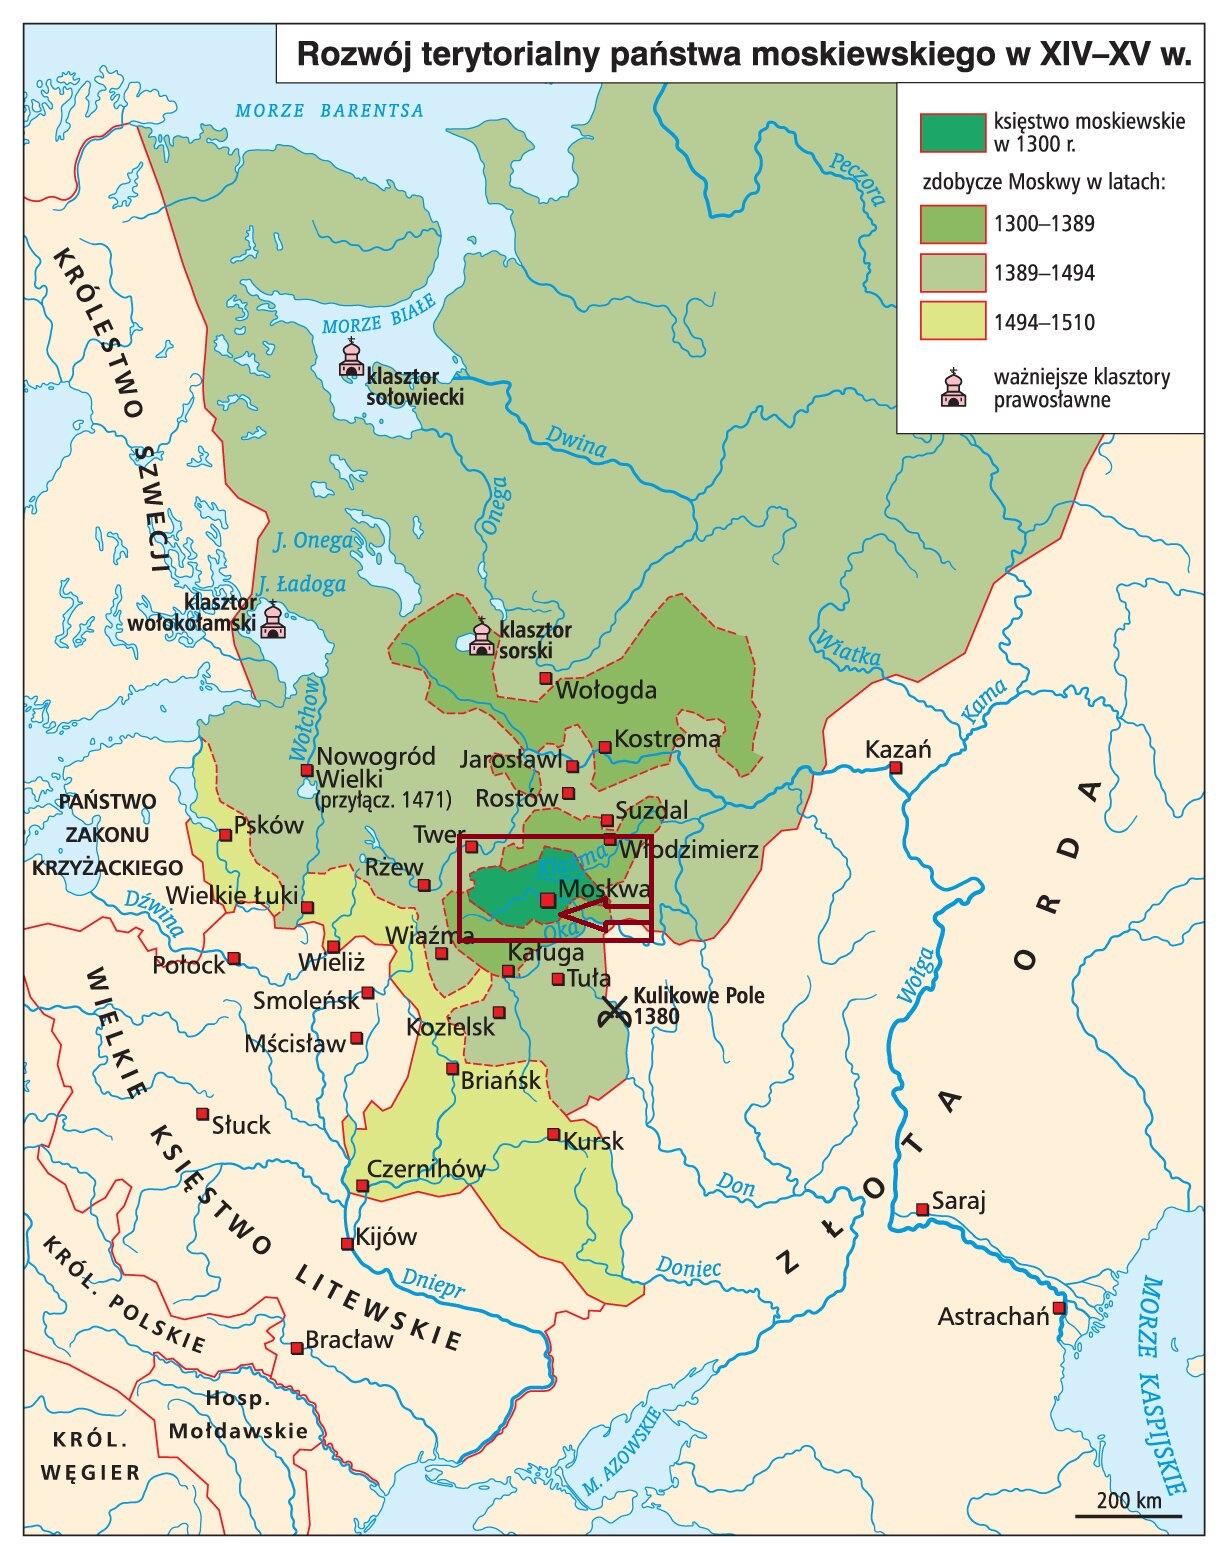 Ekspansja terytorialna Rosji od XII wieku